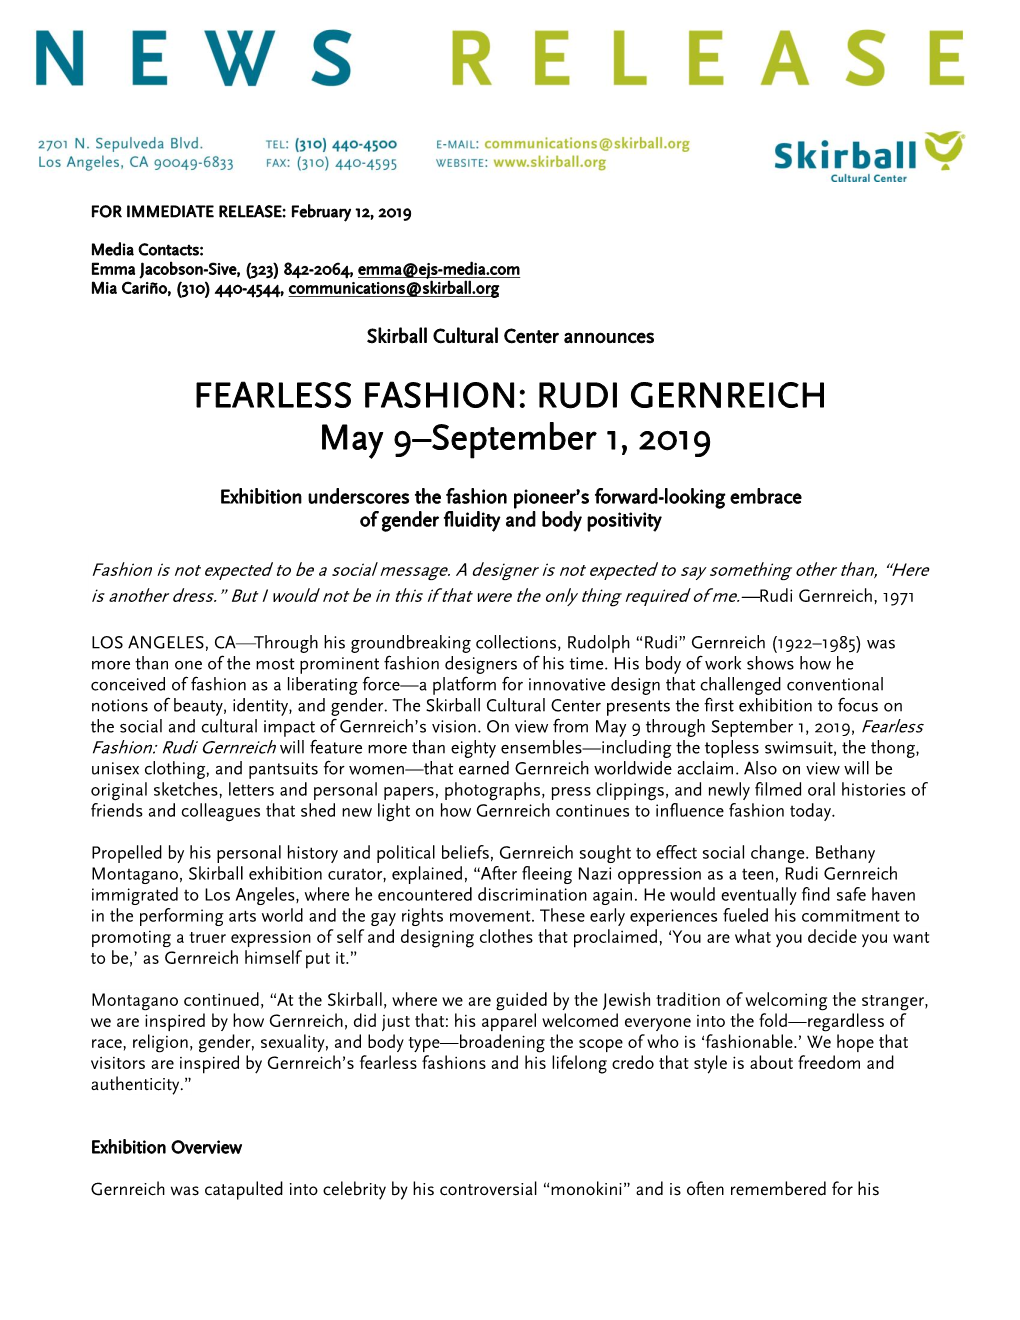 FEARLESS FASHION: RUDI GERNREICH May 9–September 1, 2019